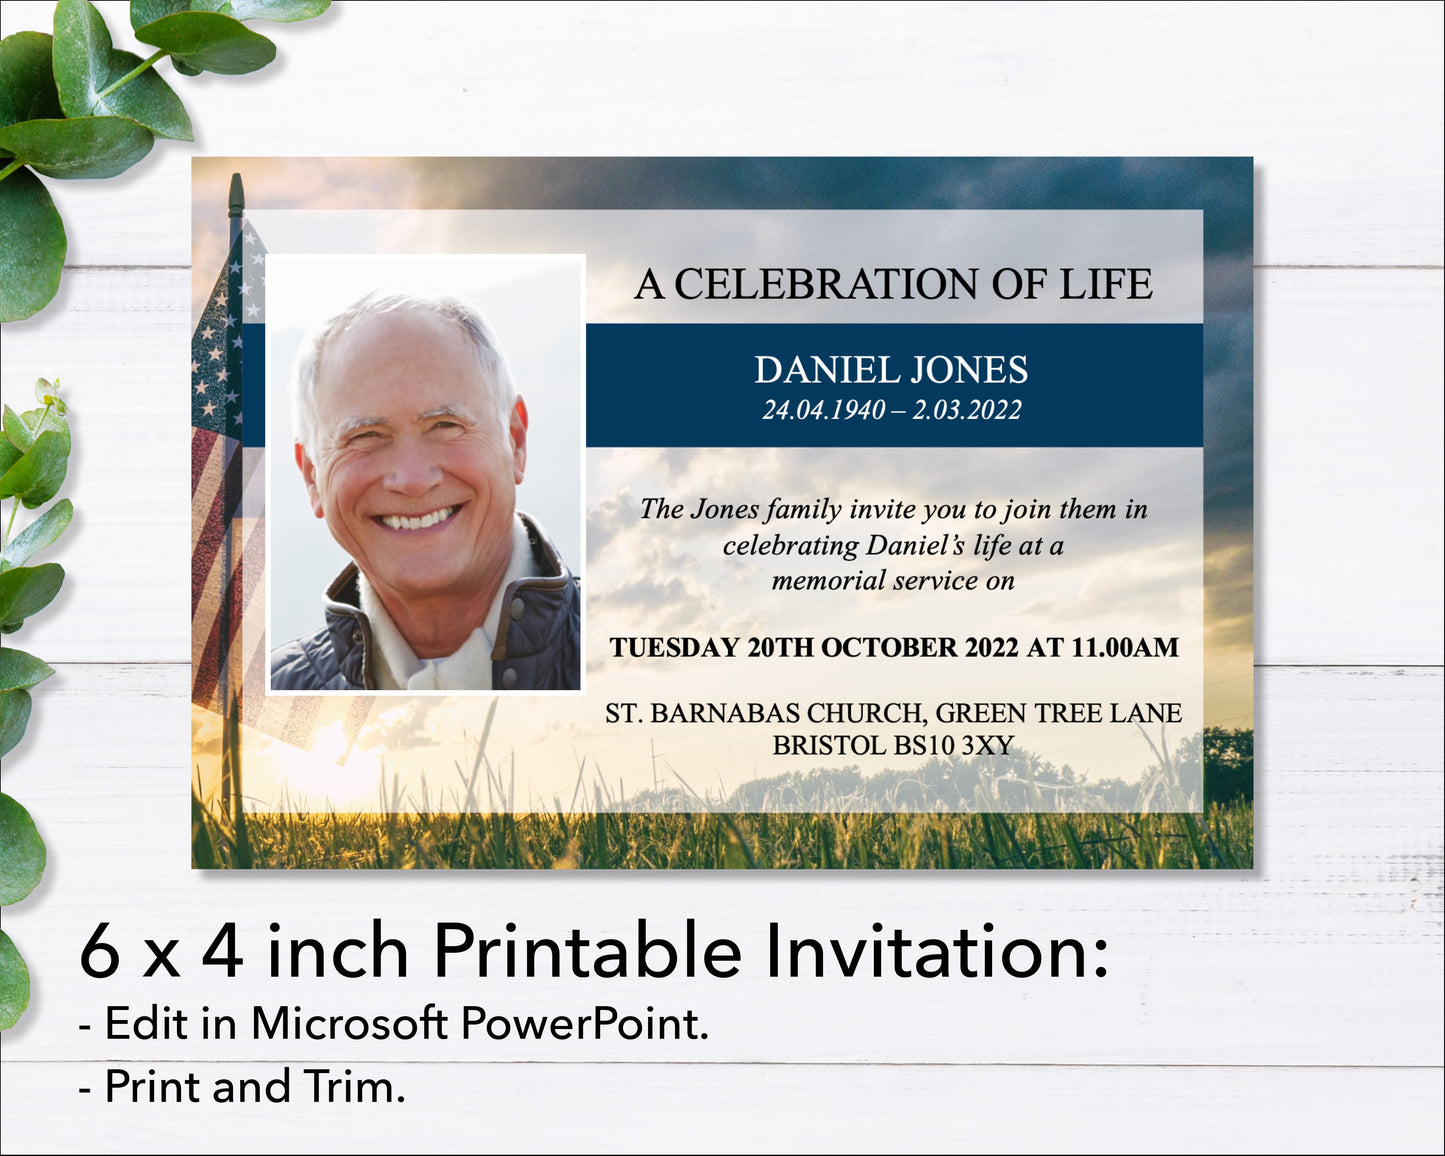 Military Funeral e-Invite & Invitation Card